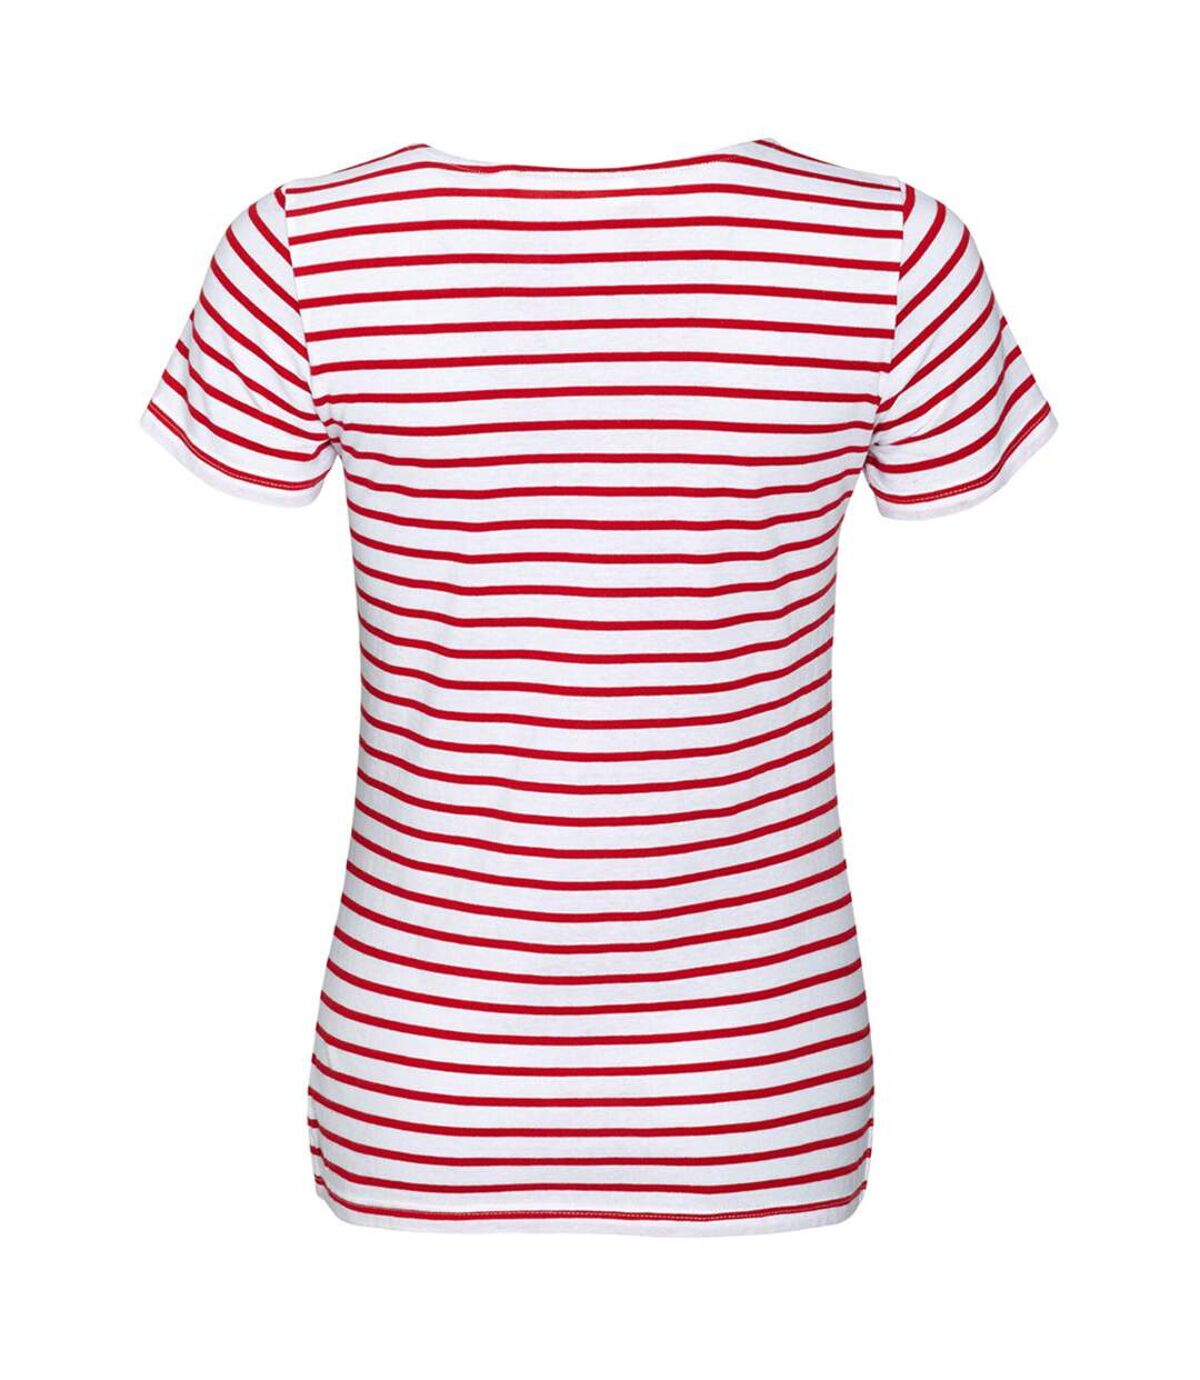 SOLS Miles - T-shirt rayé à manches courtes - Femme (Blanc / rouge) - UTPC2585